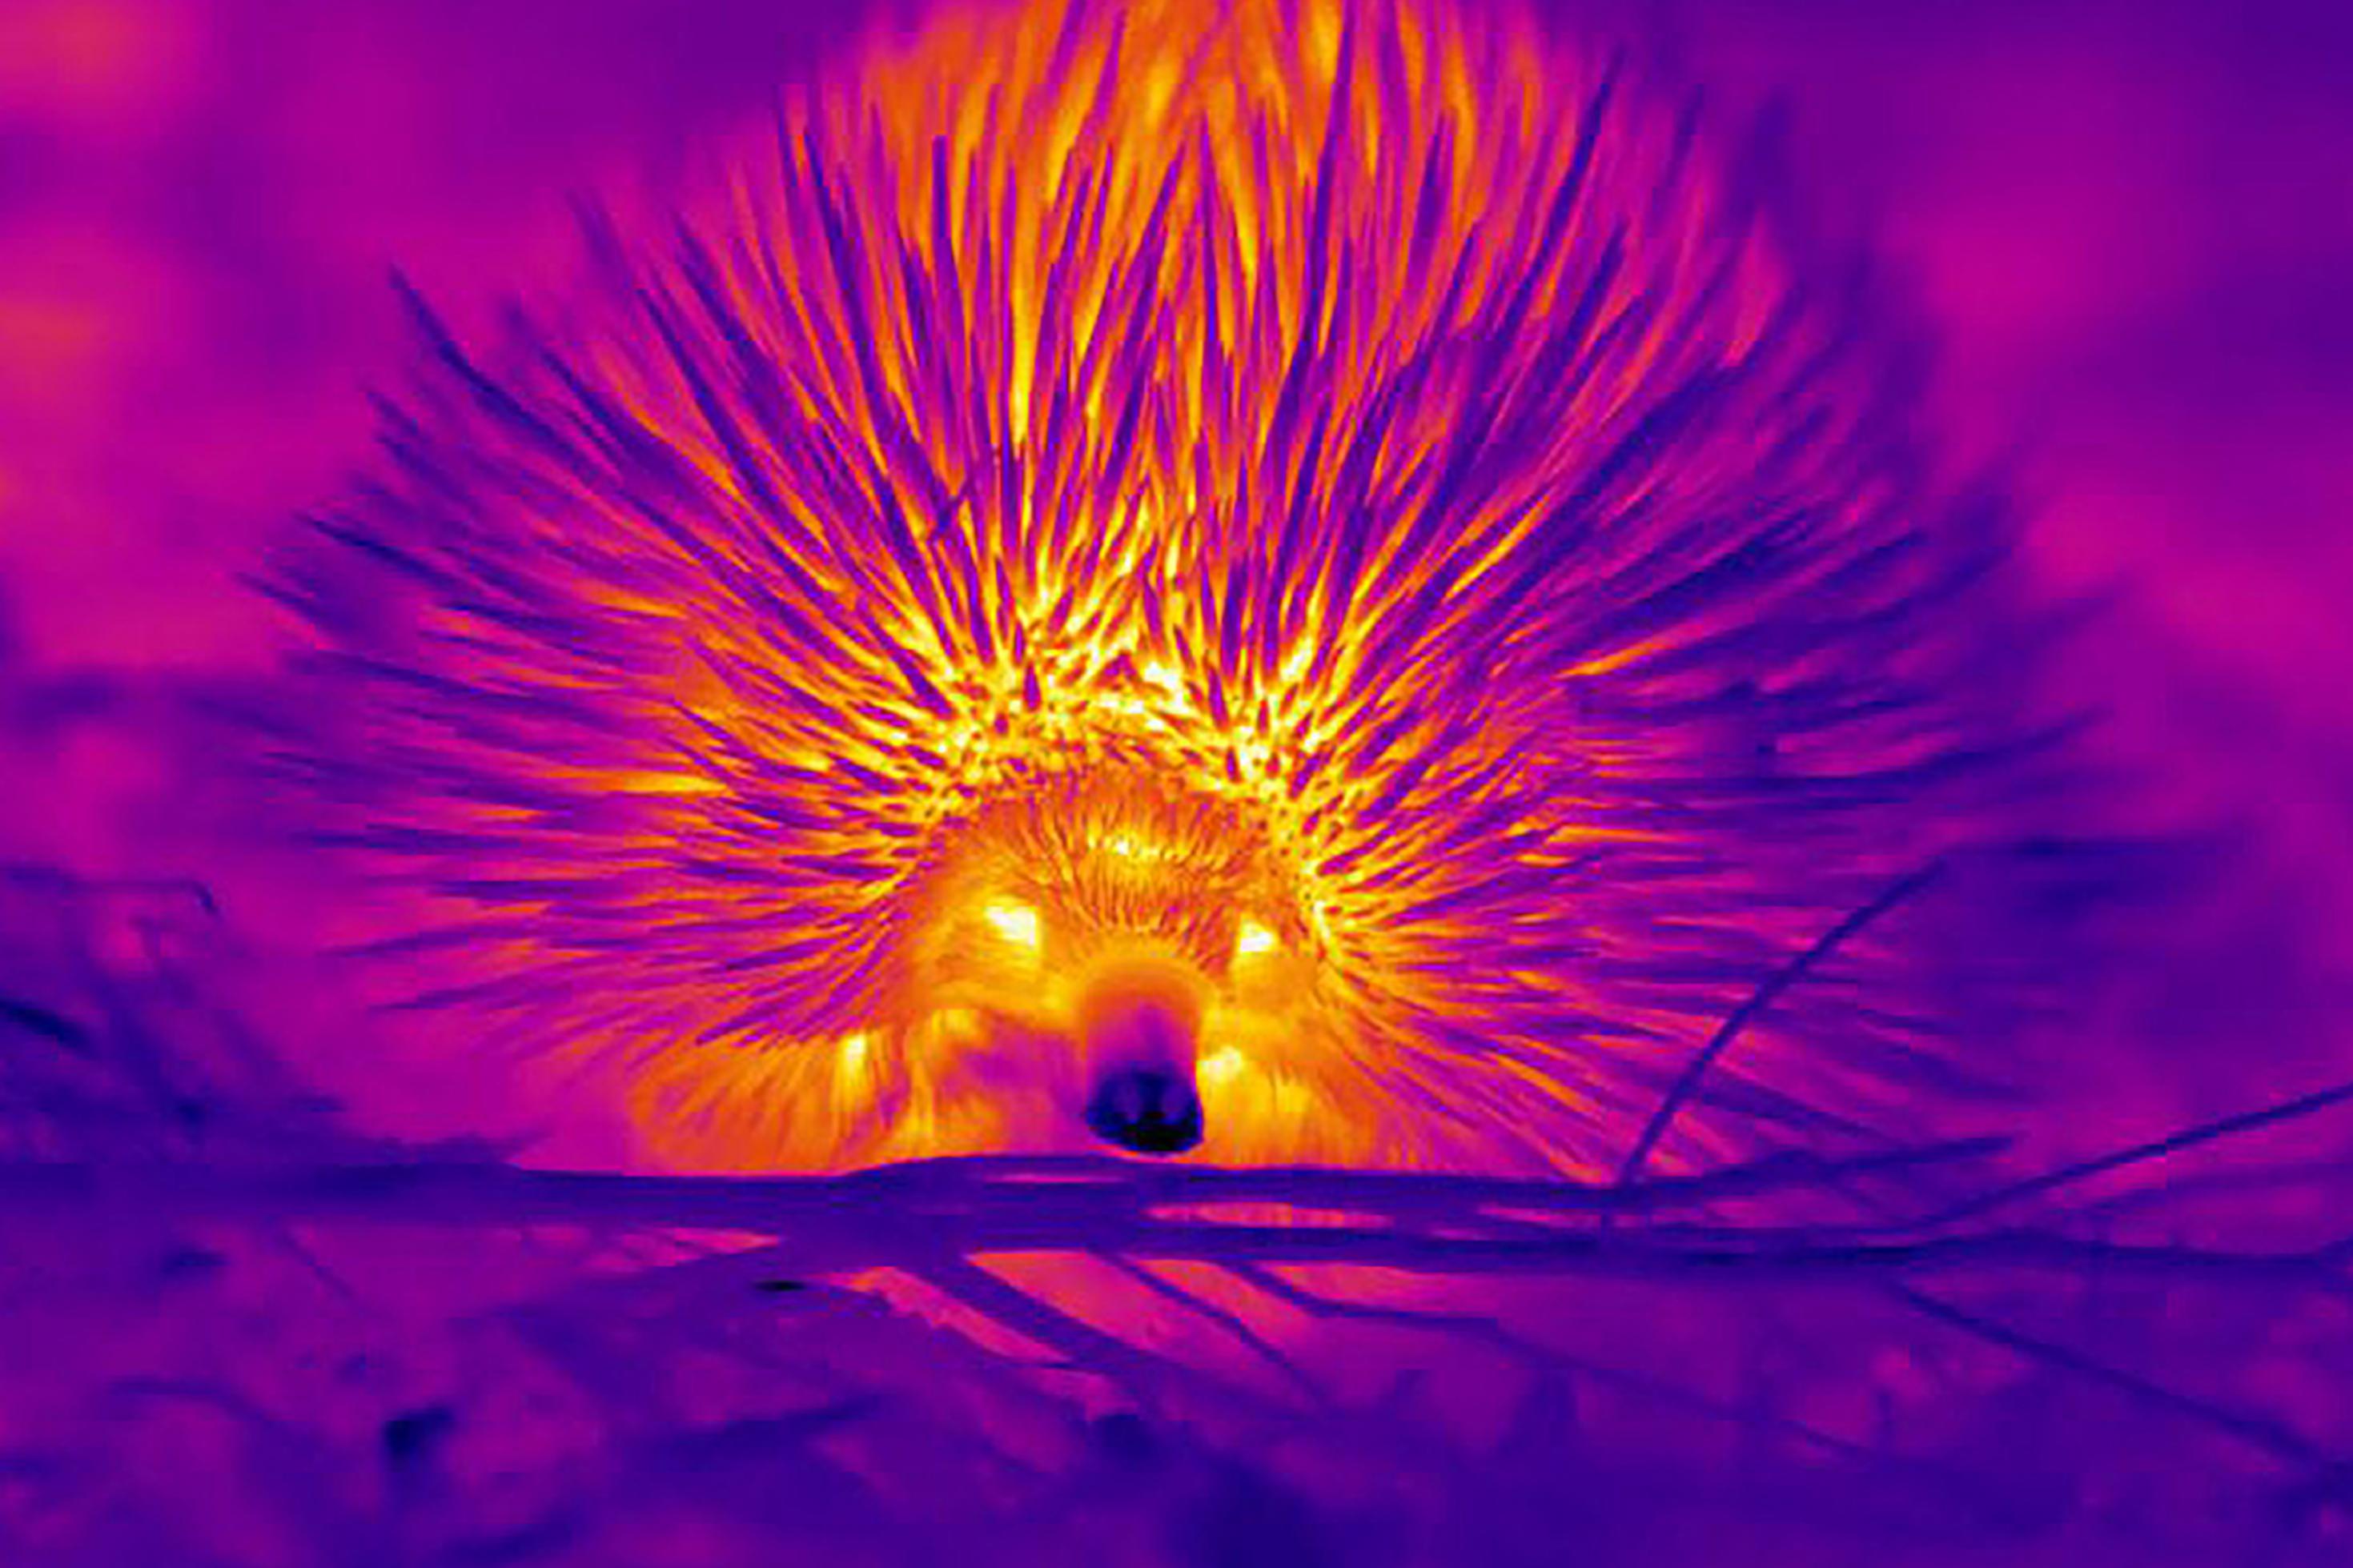 Wärmebild eines australischen Ameisenigels. Je nach Temperatur sind die Körperregionen grell gelb, rötlich oder lila gefärbt. Die kühle Nasenspitze ist fast schwarz.